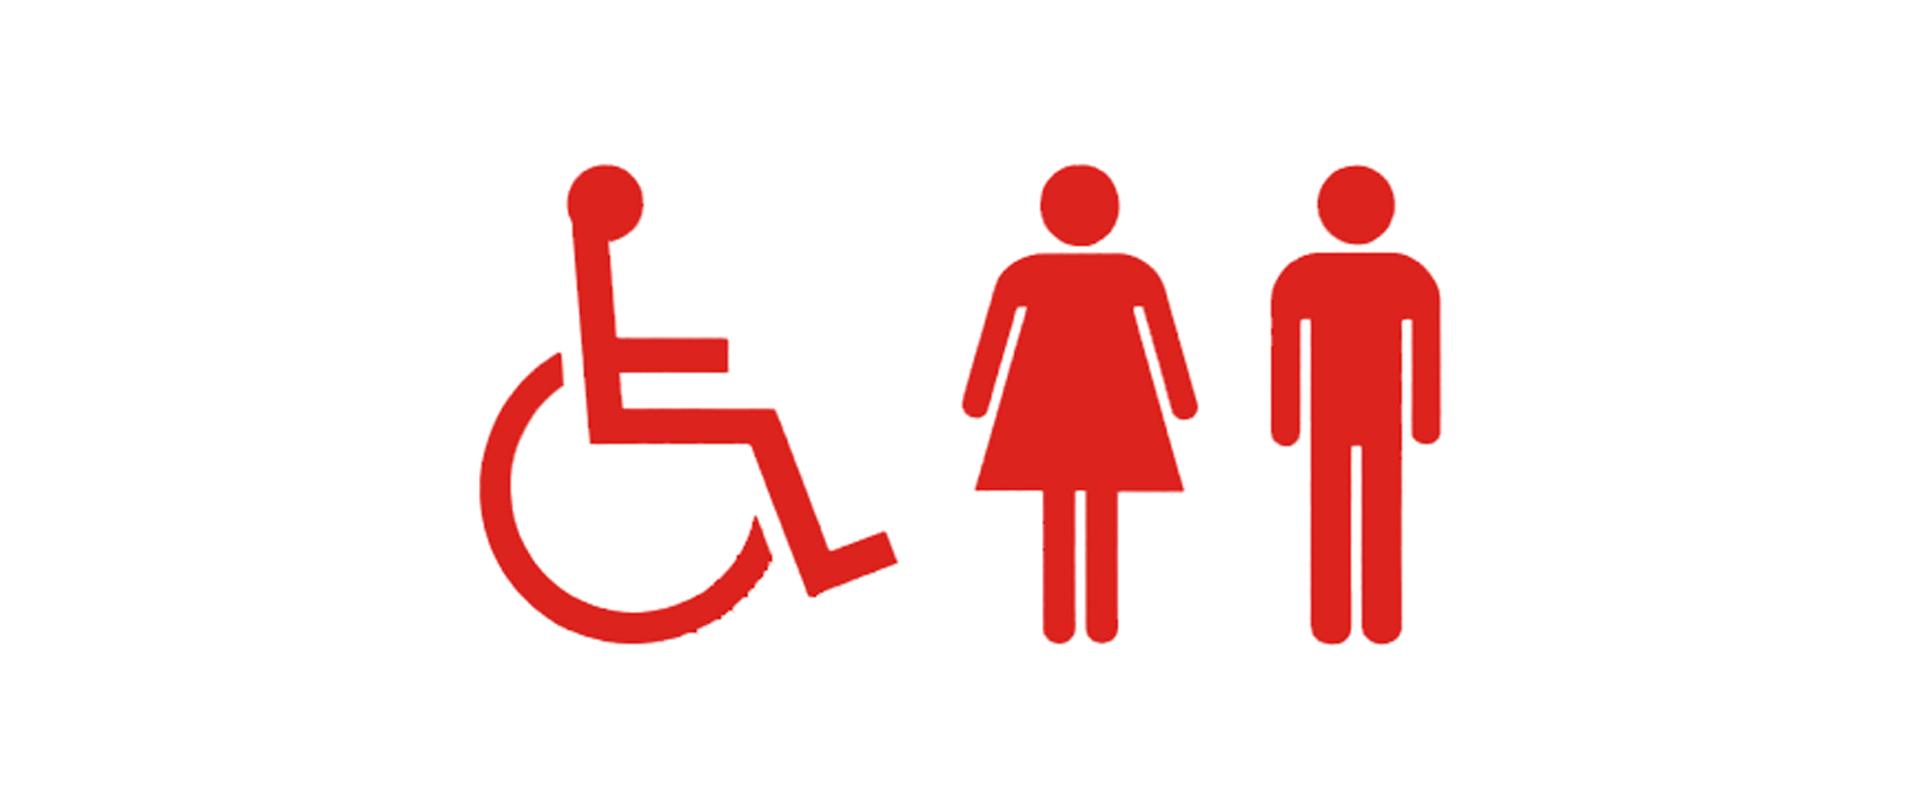 3 sylwetki osoby na wózku, kobiety i mężczyzny